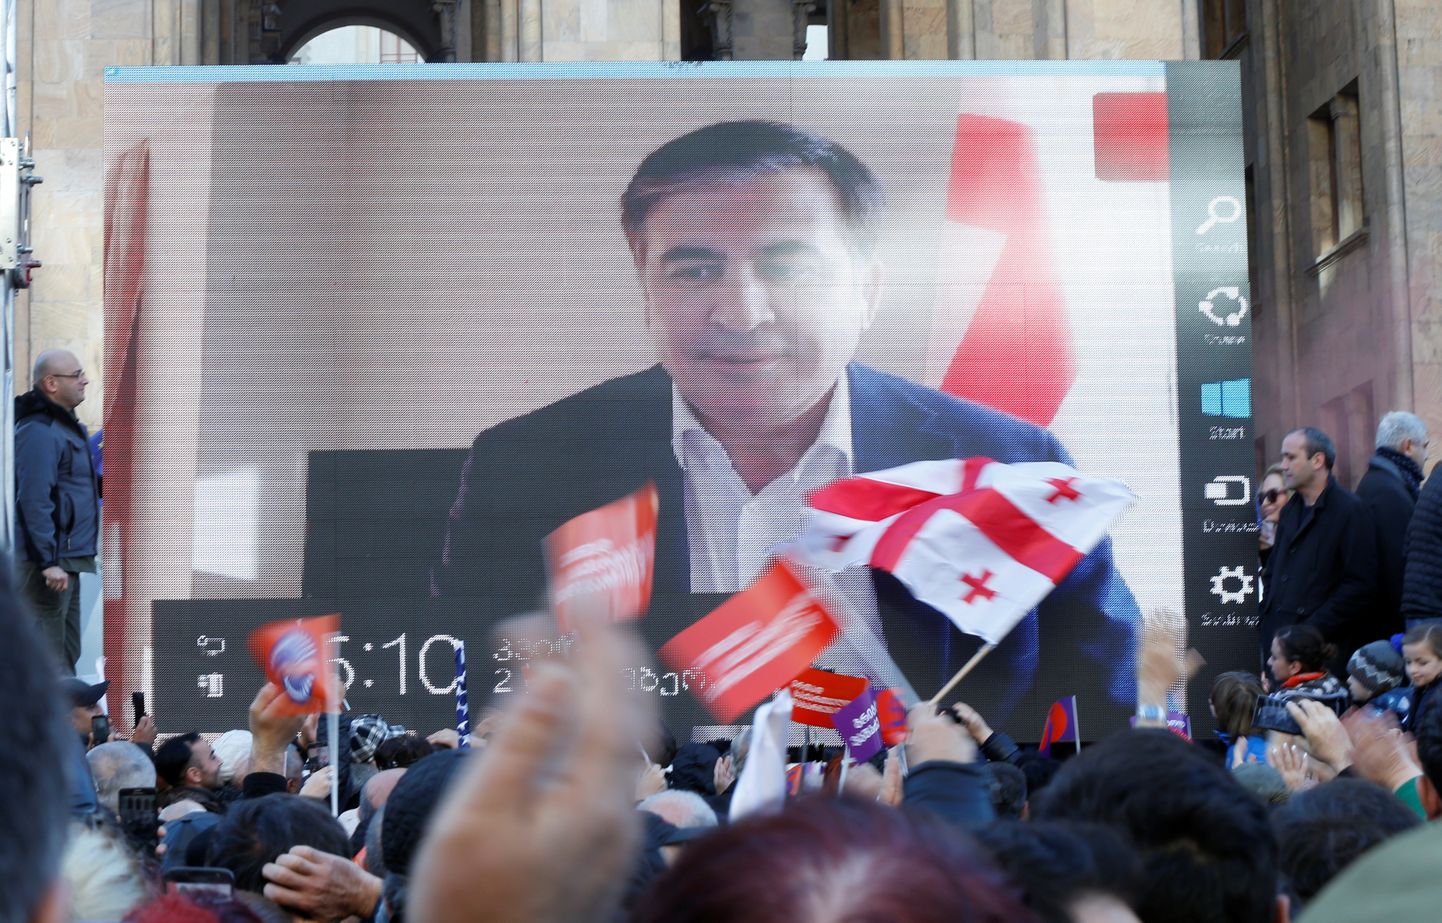 Михаил Саакашвили обращается к своим сторонникам посредством телемоста во время митинга оппозиции в Тбилиси после президентских выборов 2 декабря 2018 года.